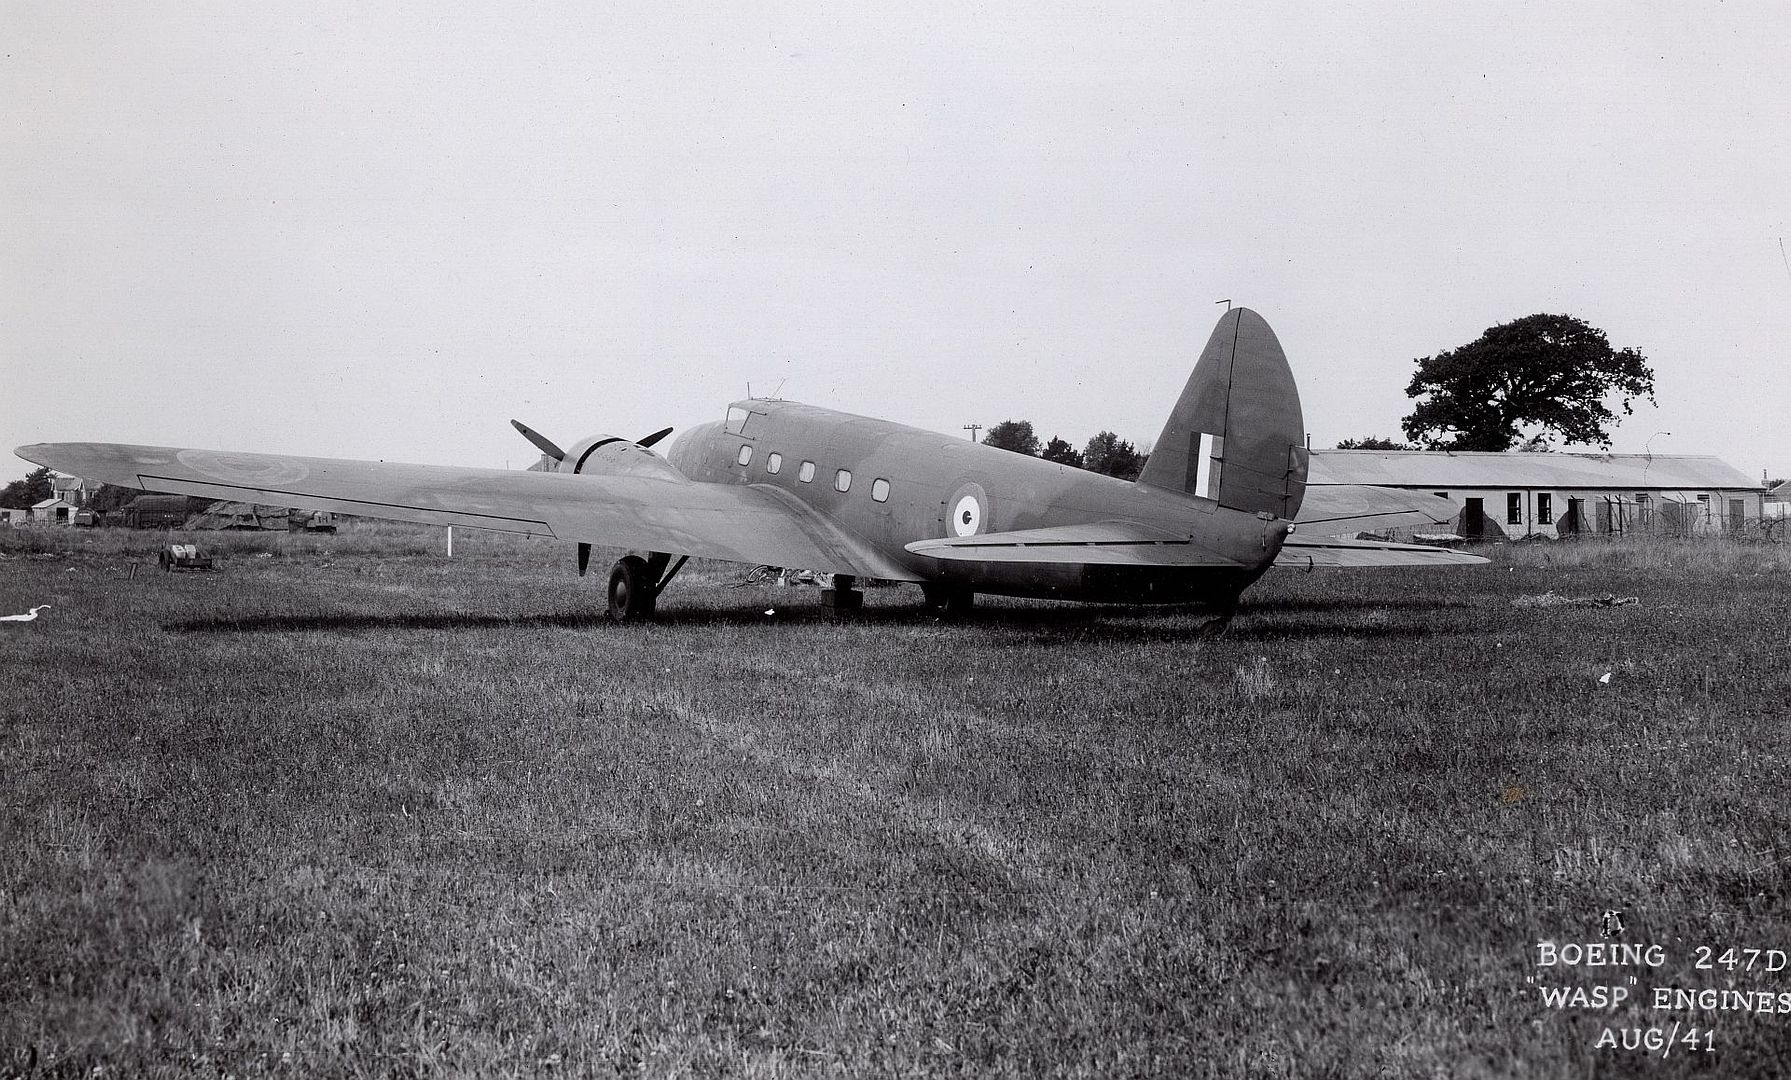 Boeing 247D RAF